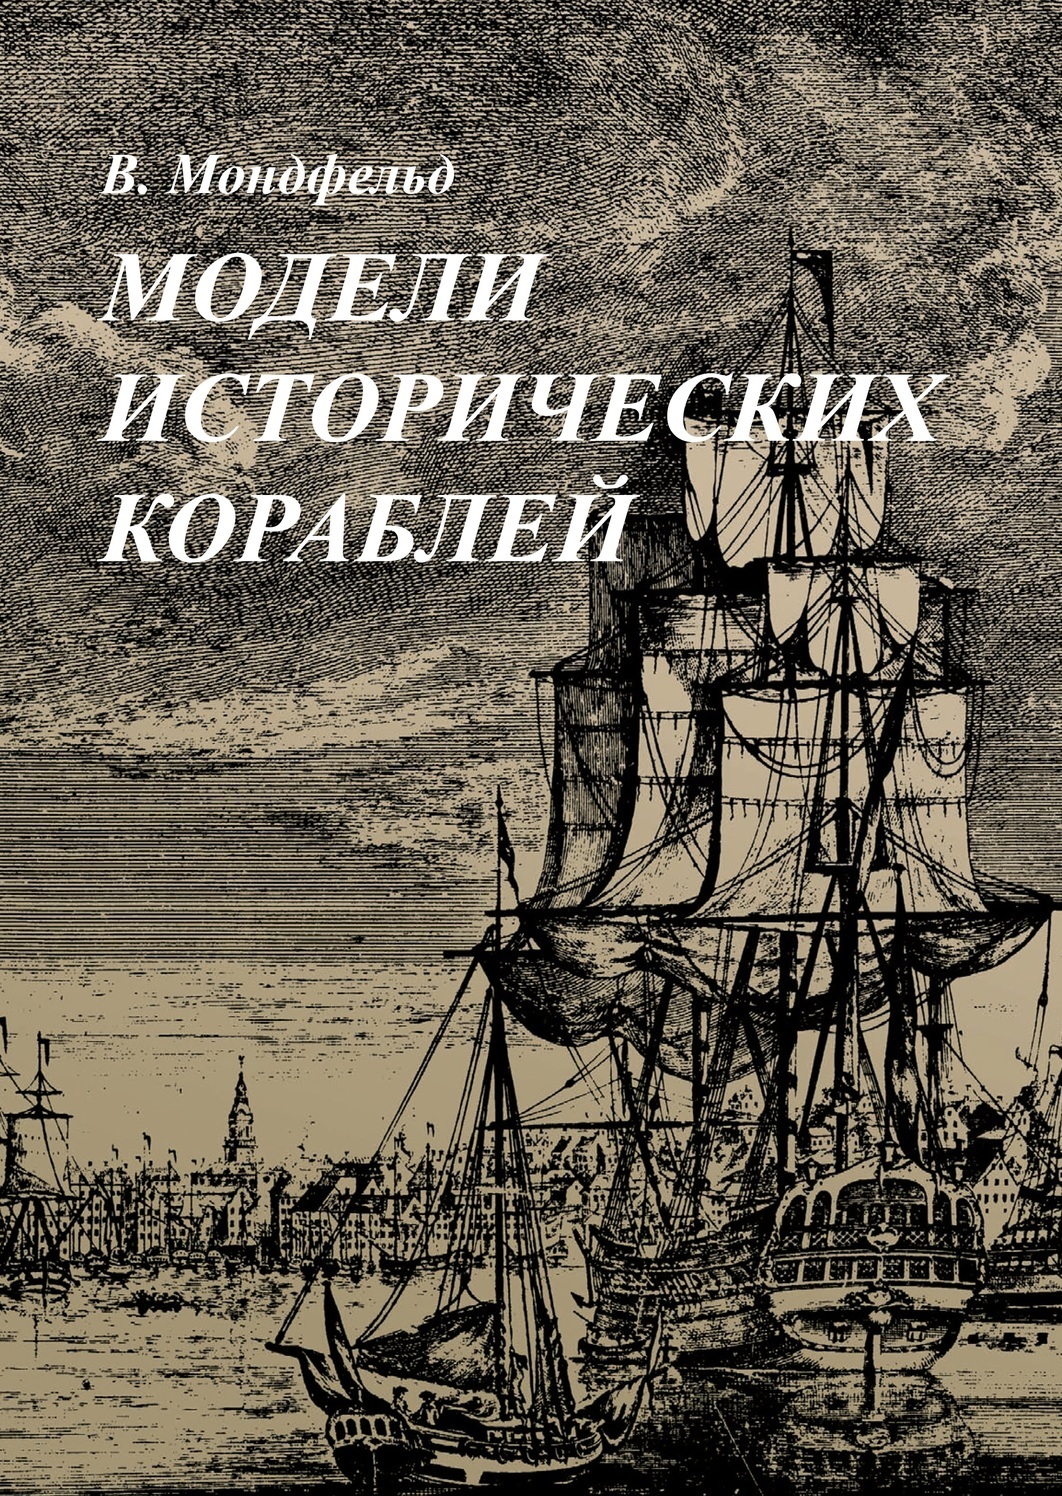 Книга Вольфрам Мондфельд. "Модели исторических кораблей "